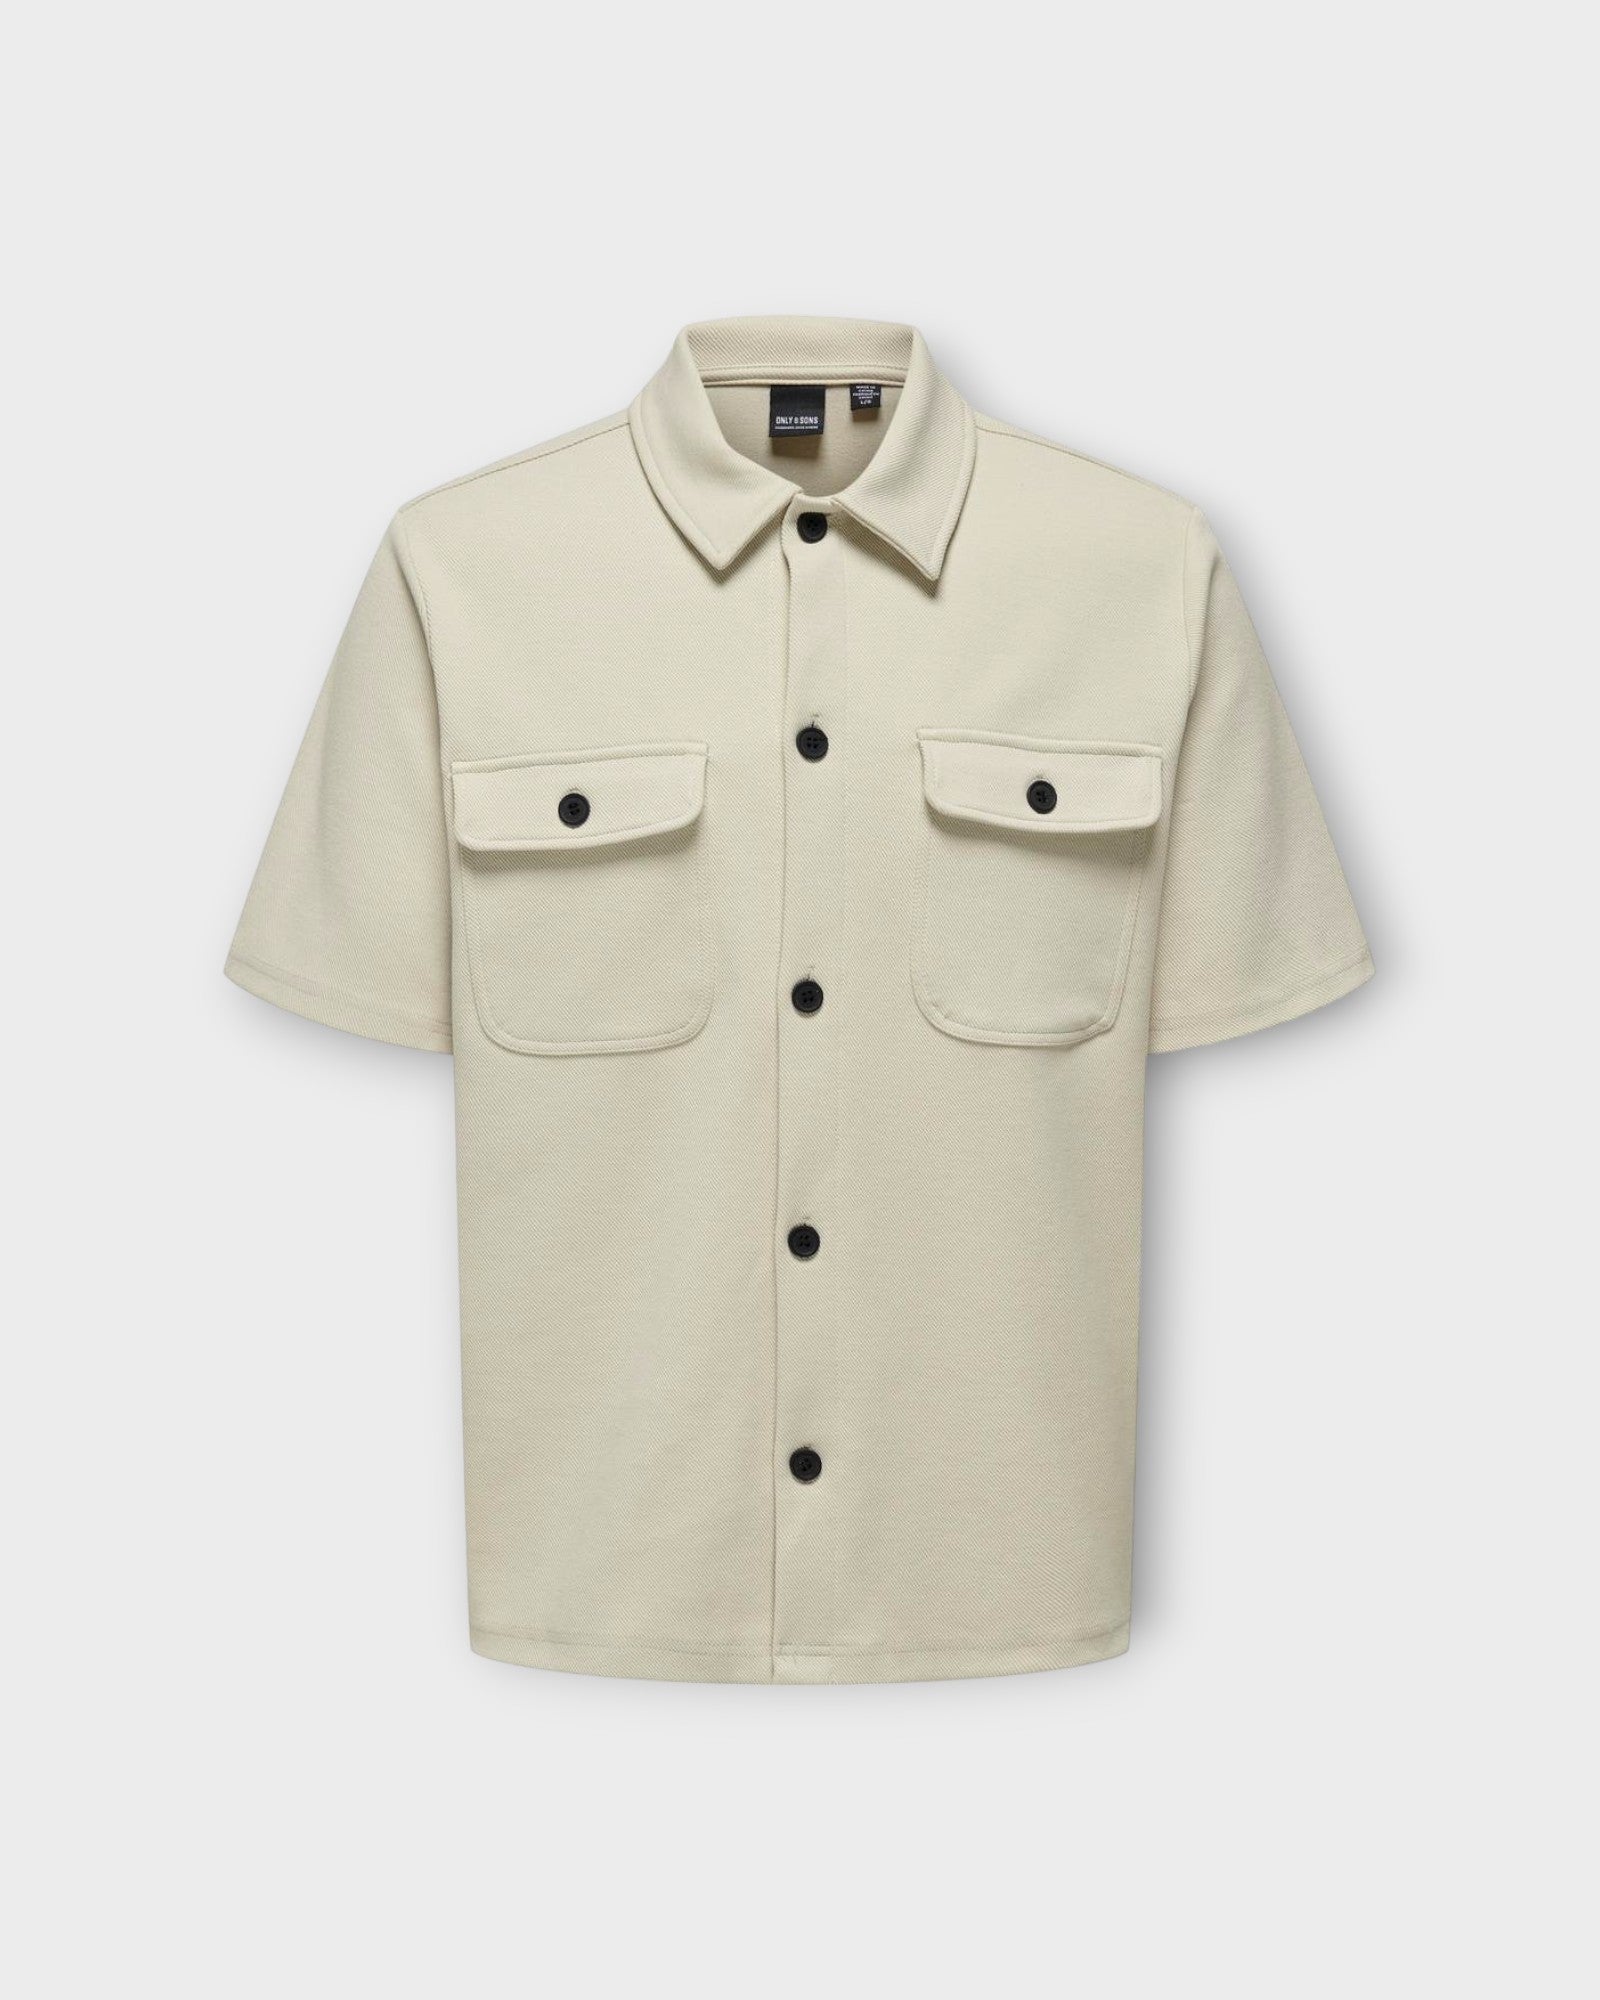  Kodyl SS Shirt Sweat Chinchilla fra Only and Sons. Lys Sandfarvet Kortærmet skjorte til mænd. Her set forfra.